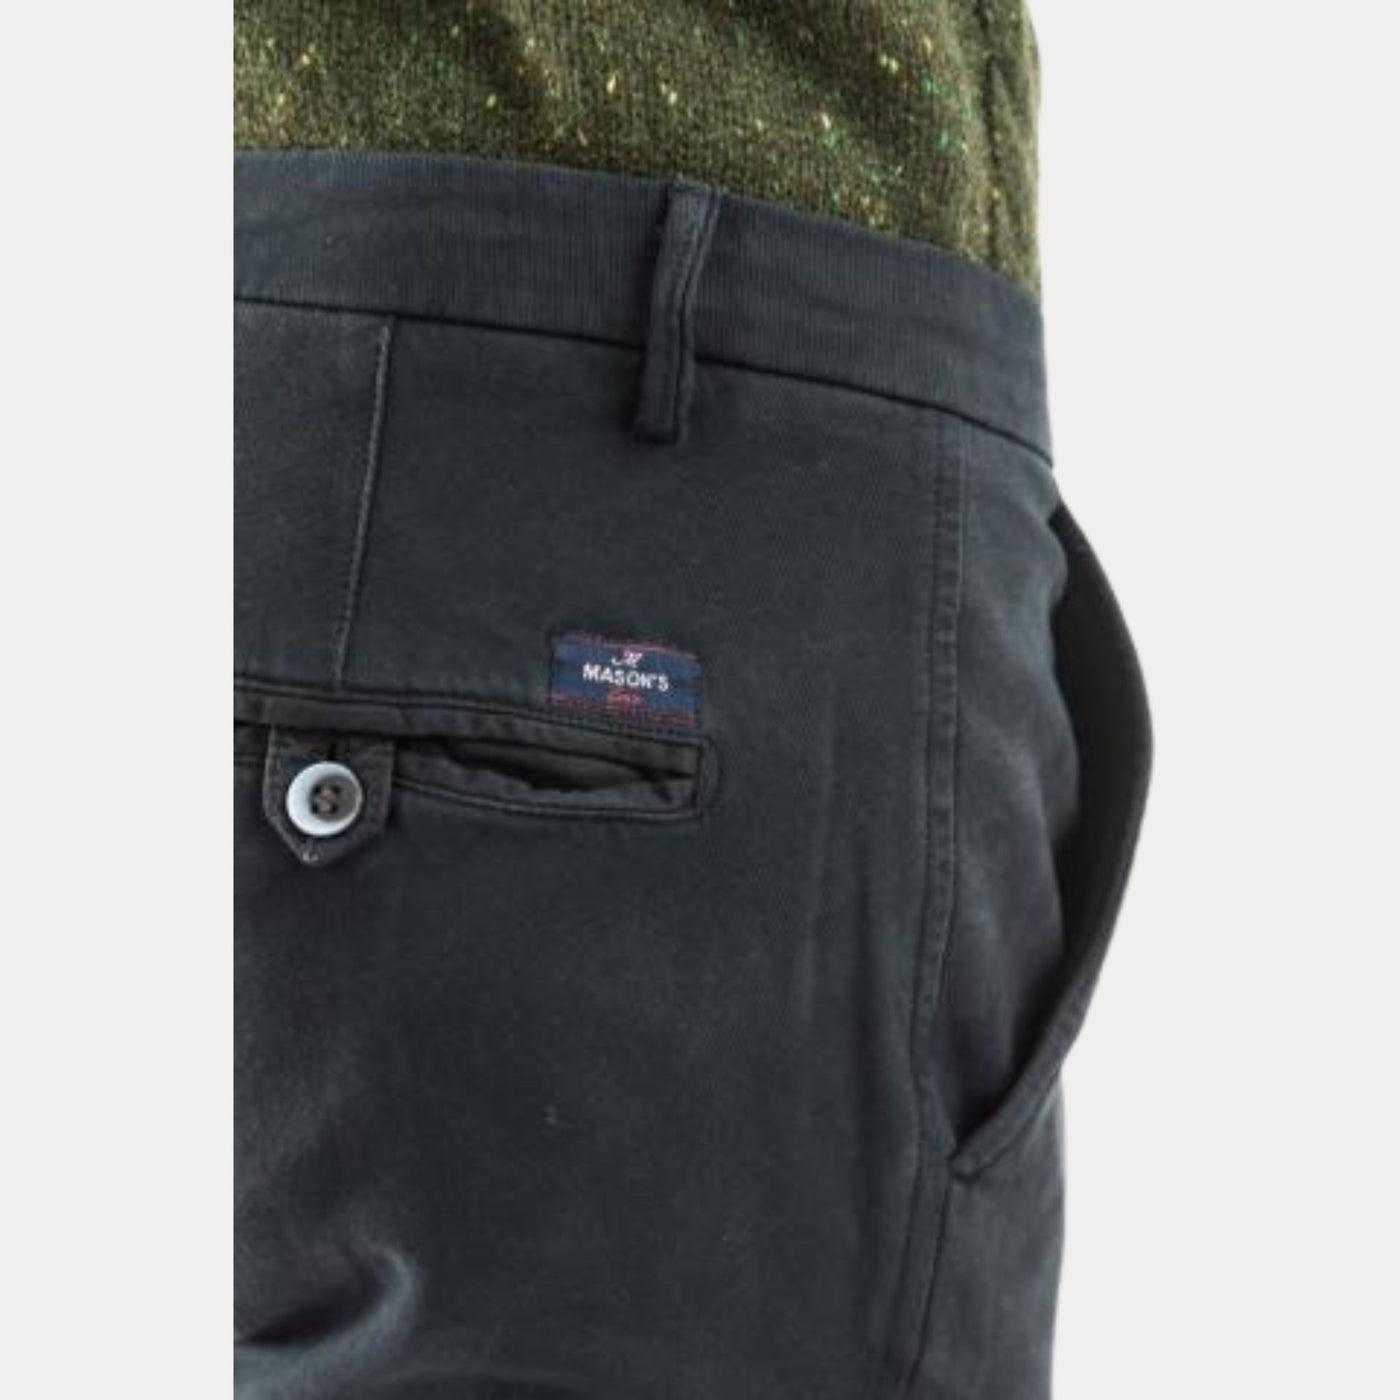 Pantalone da uomo blu firmato Masons' dettaglio tasca su modello